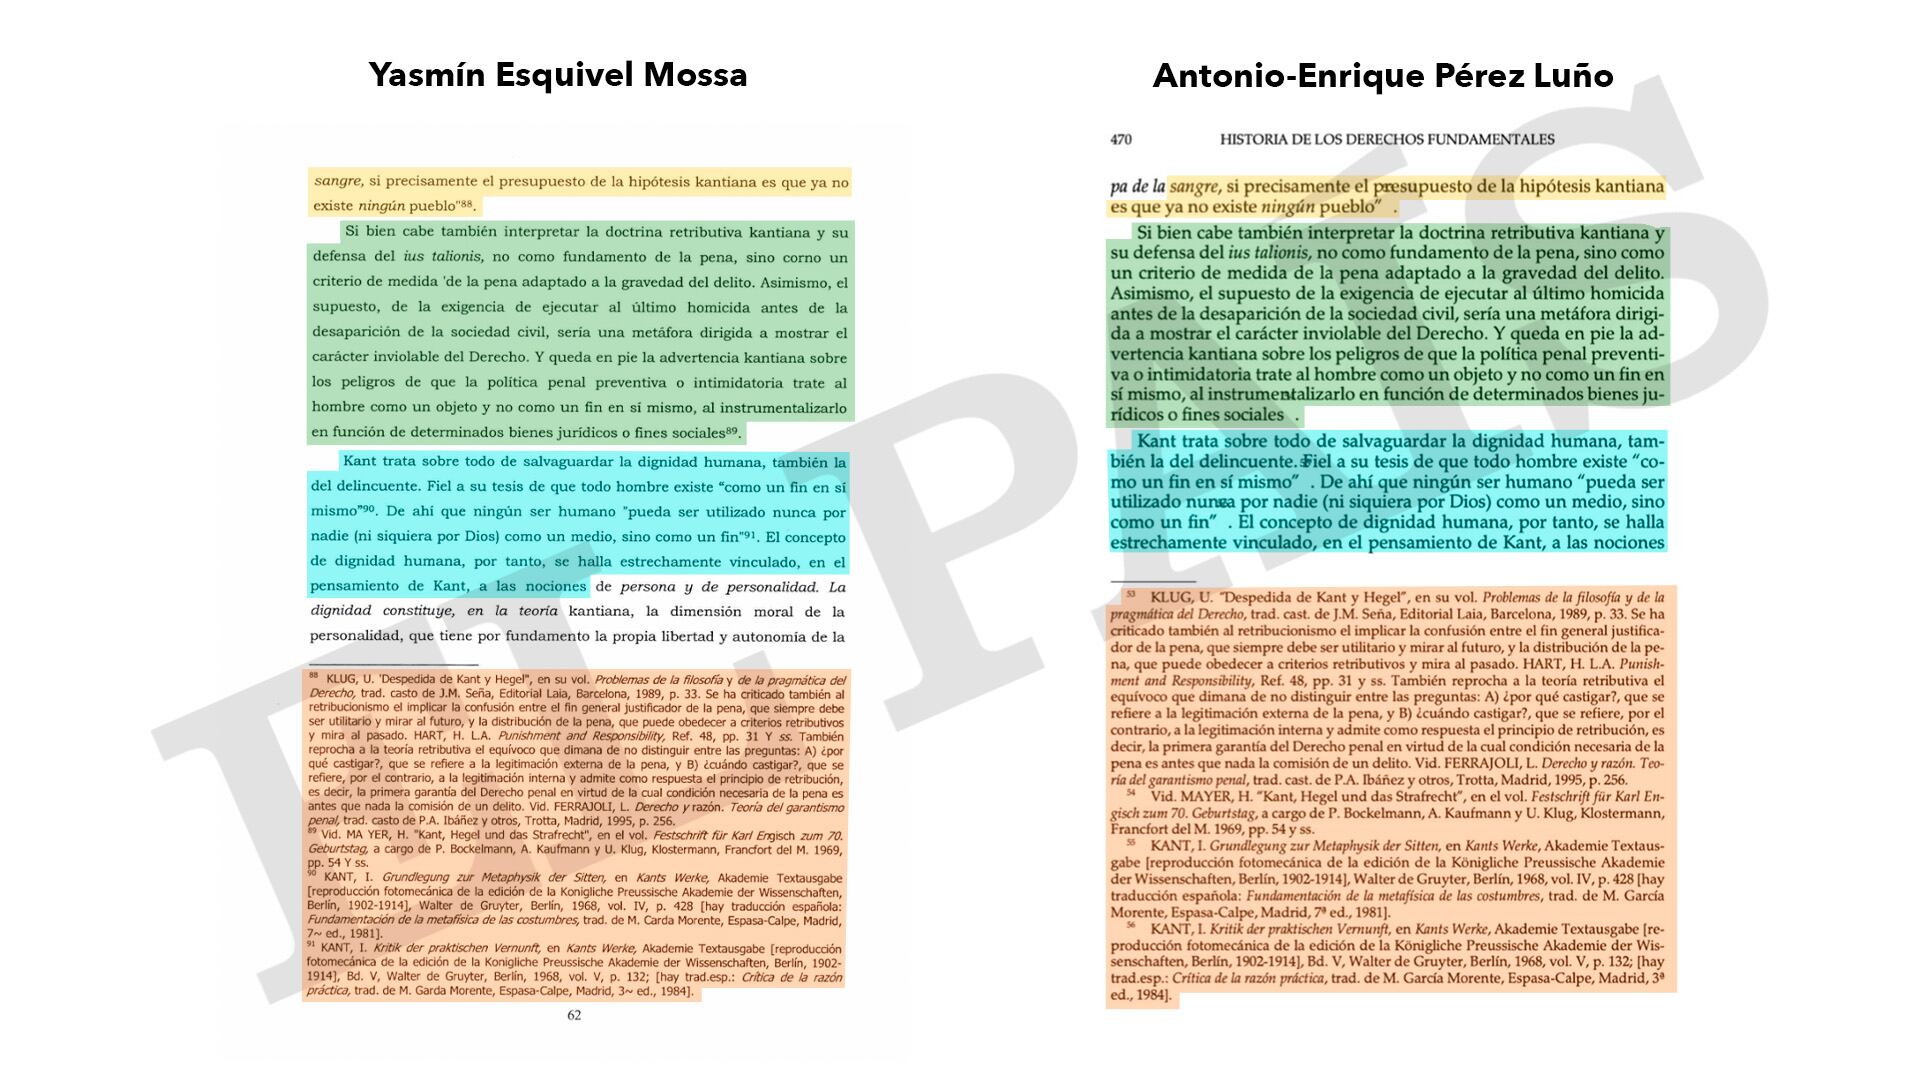 A la izquierda, la tesis de Esquivel, a la derecha, el ensayo 'Los fundamentos de los derechos humanos' de Antonio Enrique Pérez Luño. 